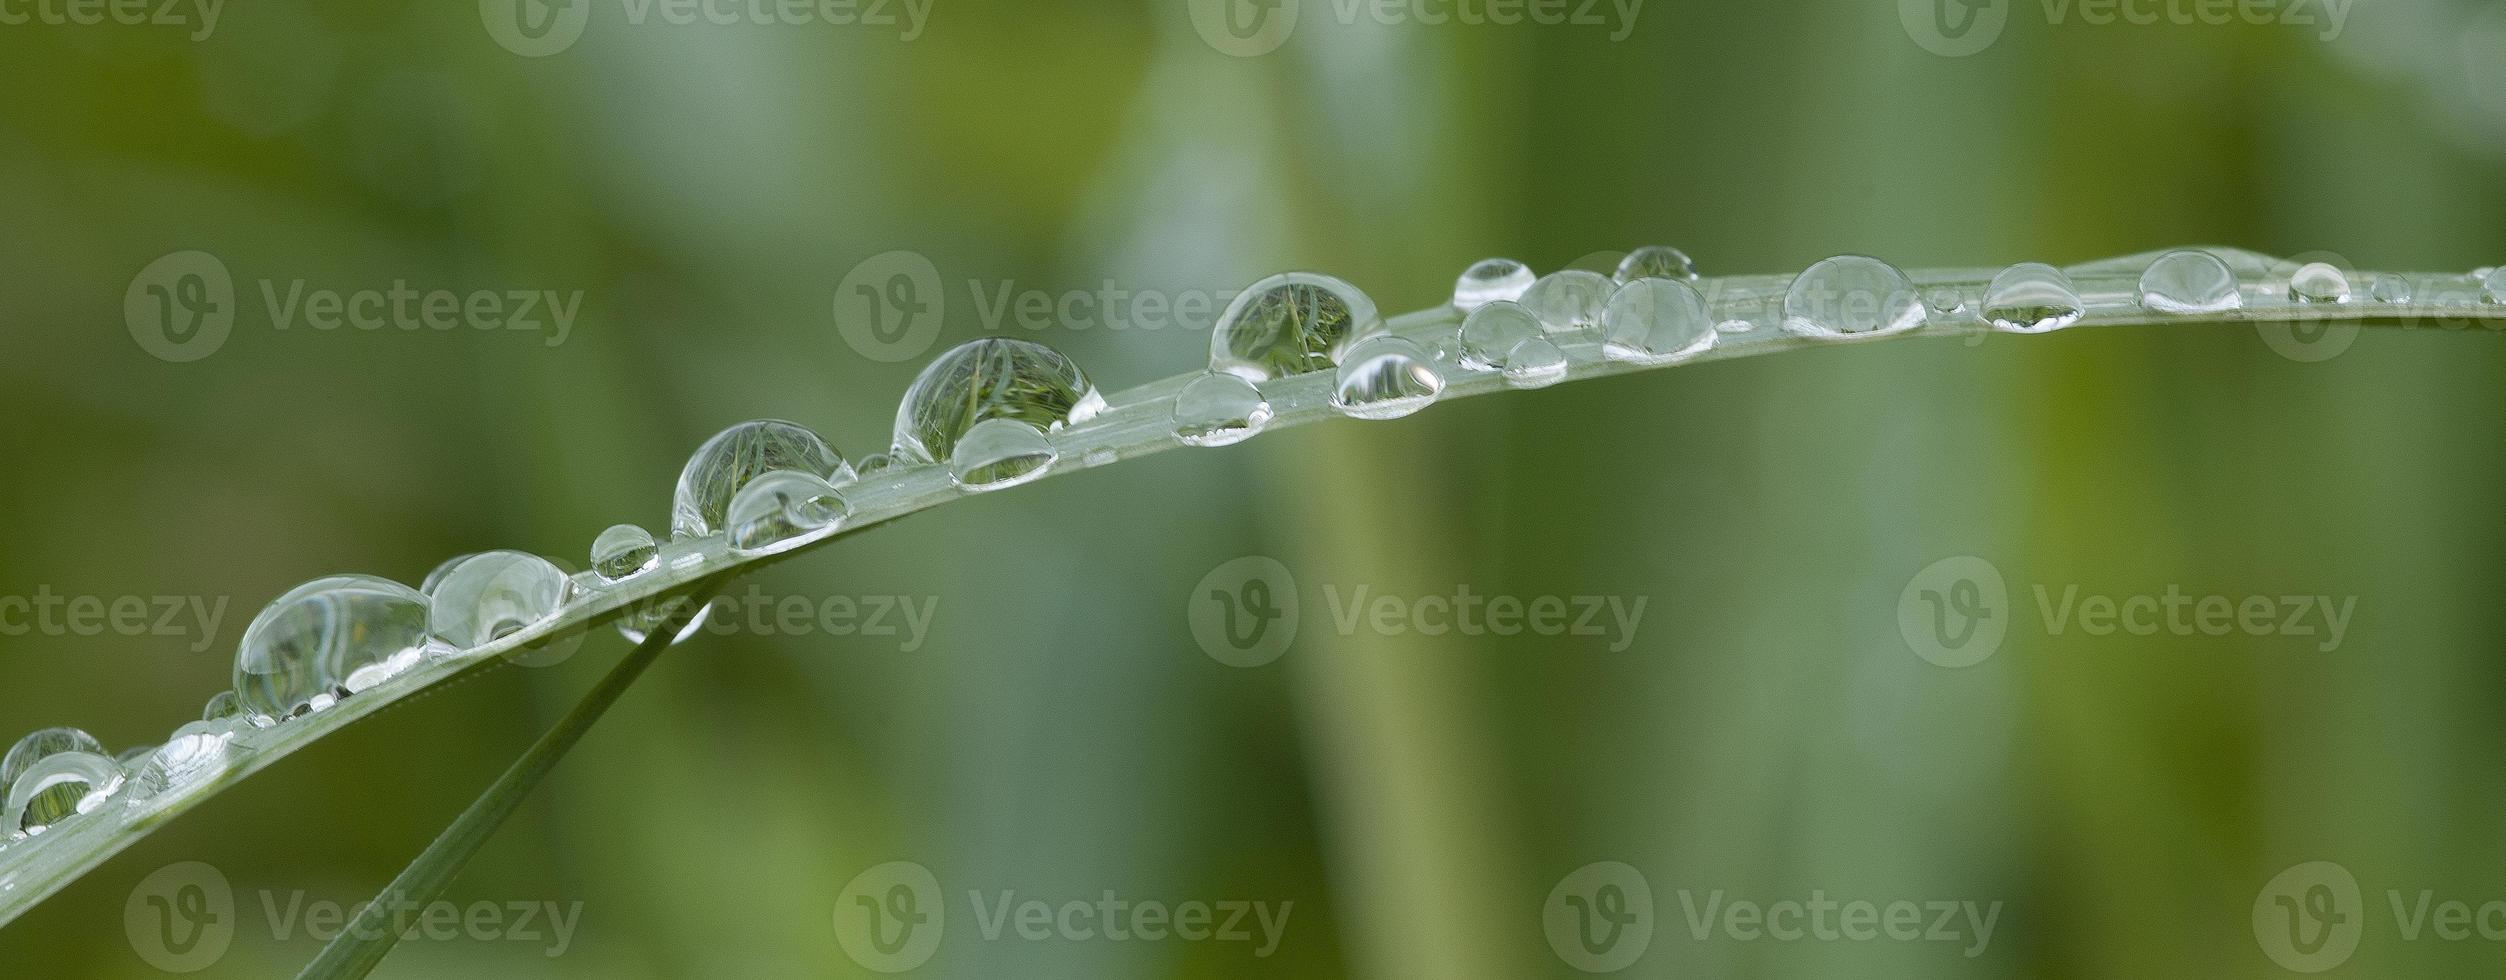 regendruppels op grasspriet foto